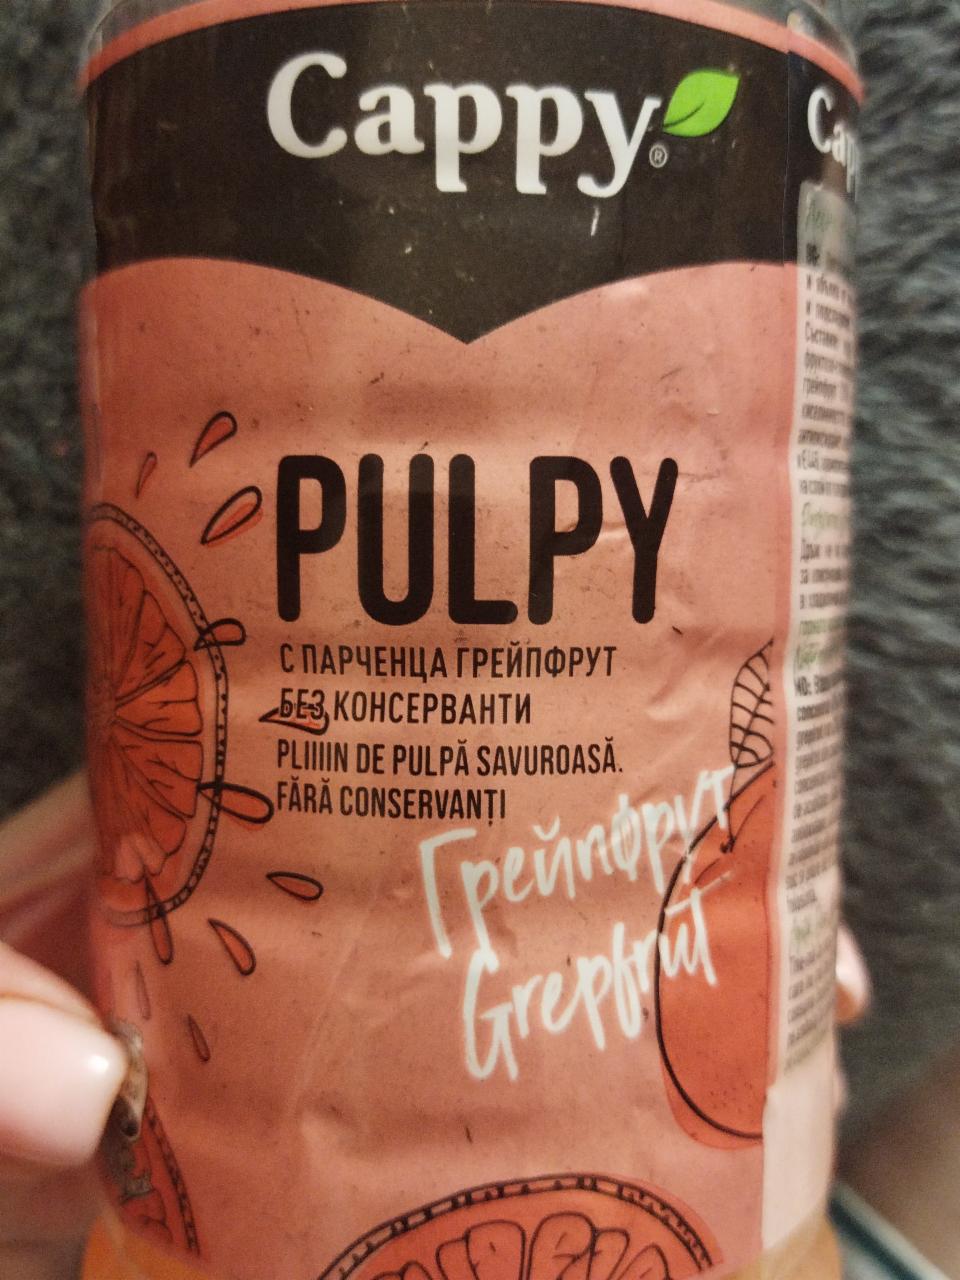 Фото - напиток негазированный с соком и кусочками грейпфрута Cappy Pulpy